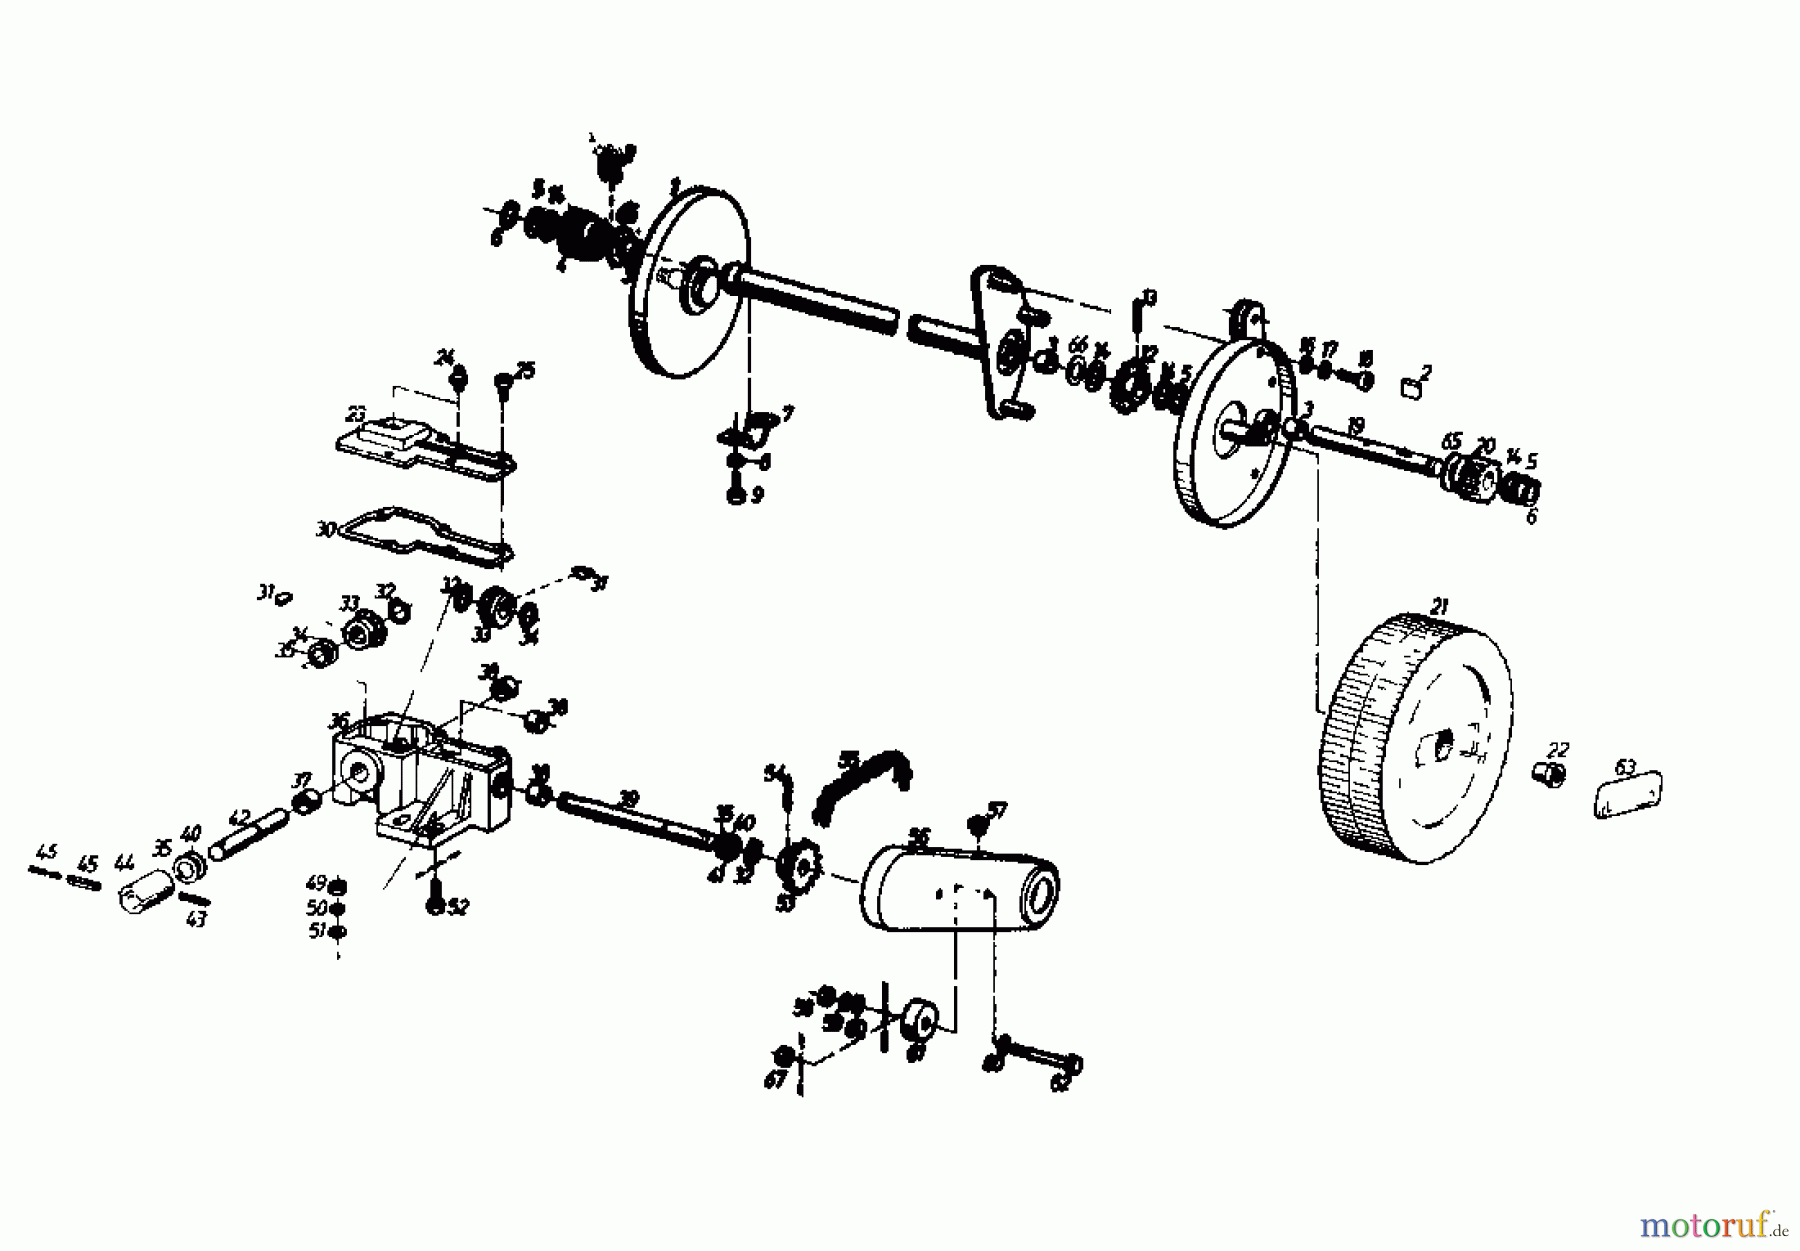  Gutbrod Motormäher mit Antrieb HB 45 REL 02885.01  (1985) Getriebe, Räder